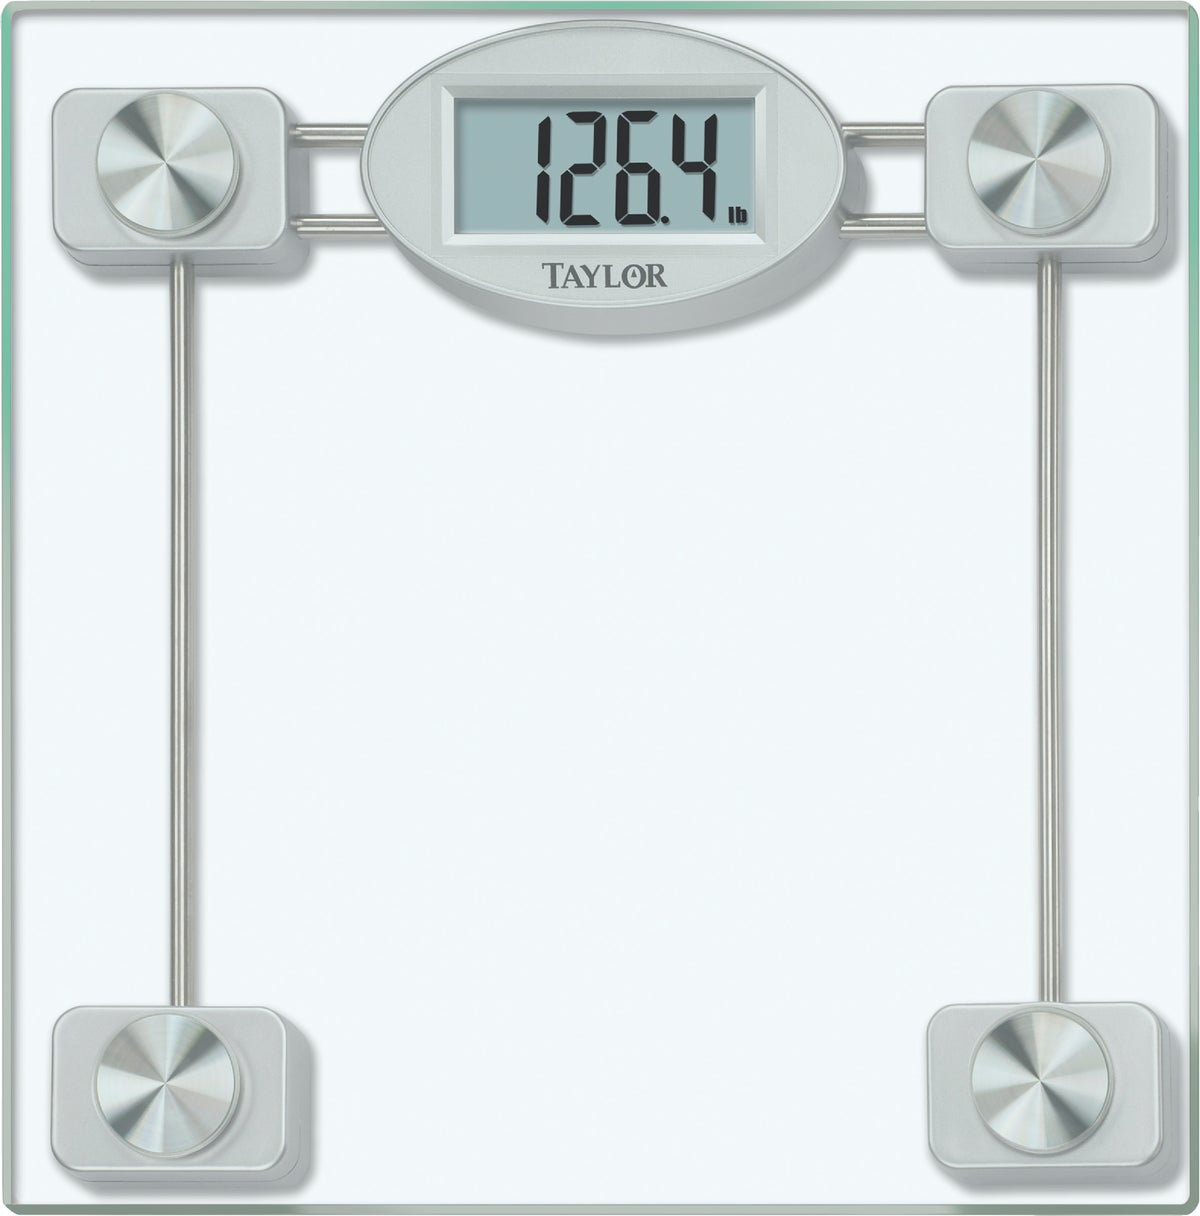 Taylor 400 lb. Digital Bathroom Scale, Chrome/Clear